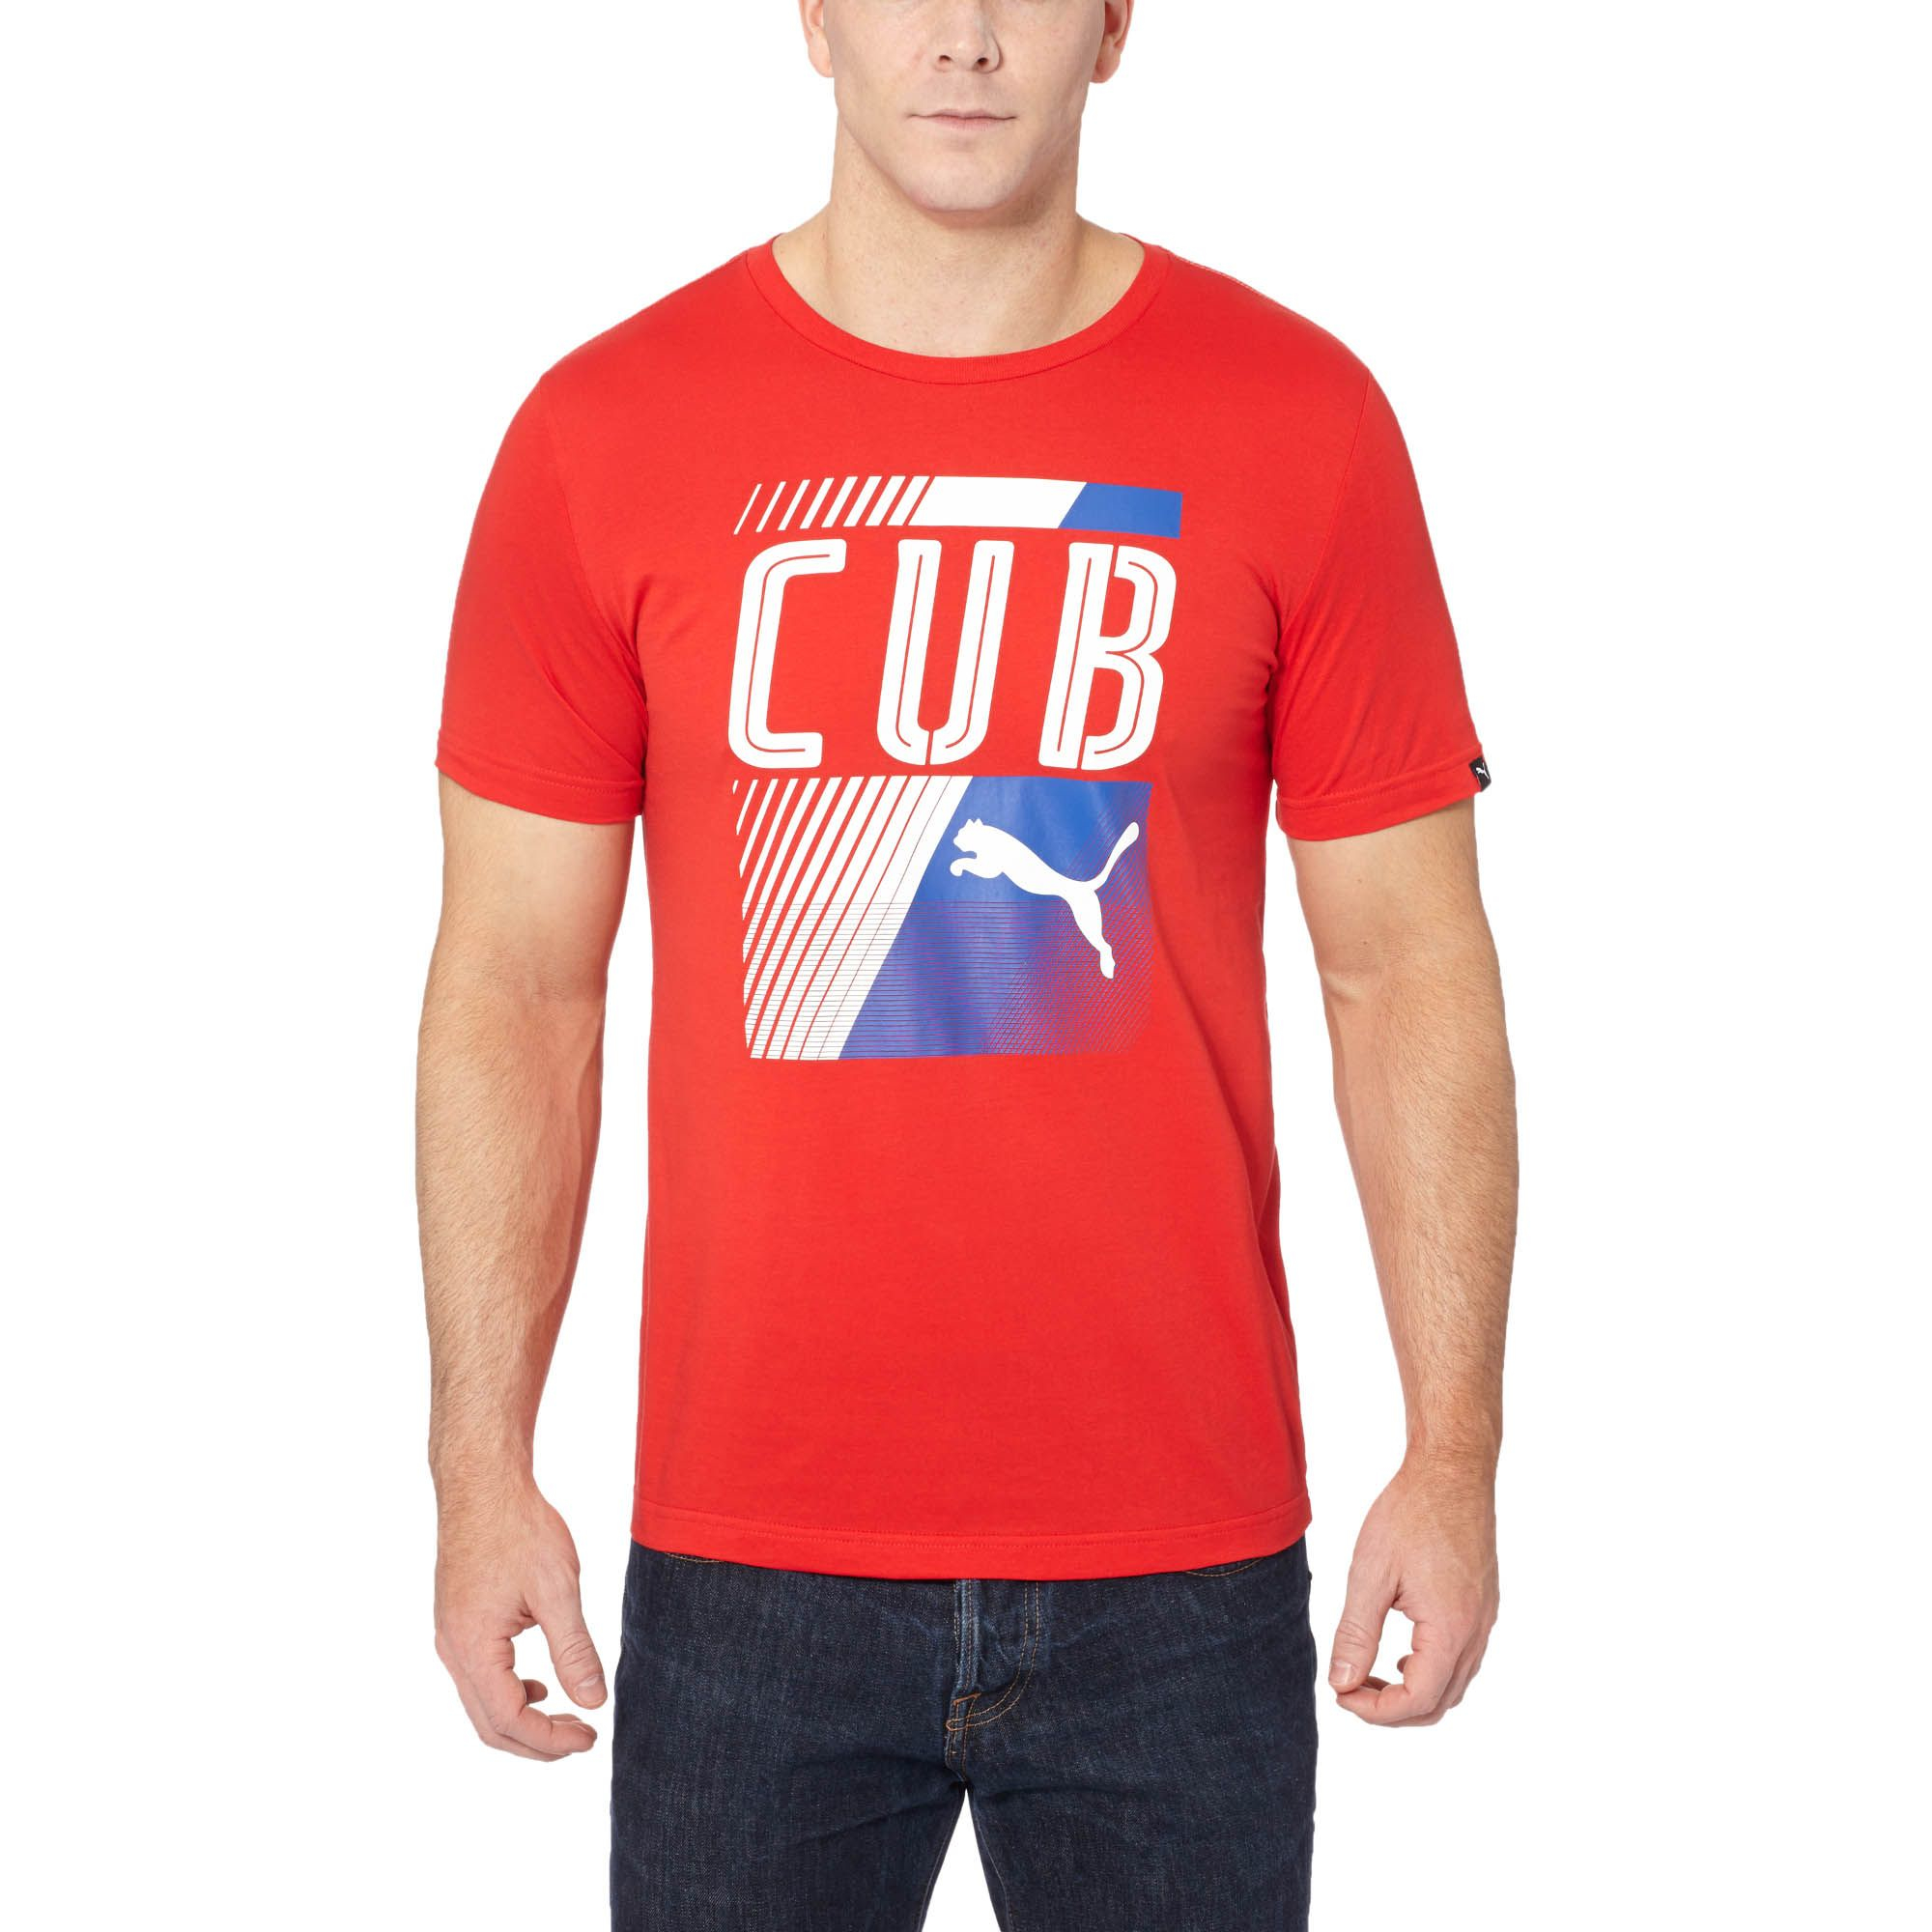 PUMA Cotton Cuba Fan T-shirt in Red for Men - Lyst